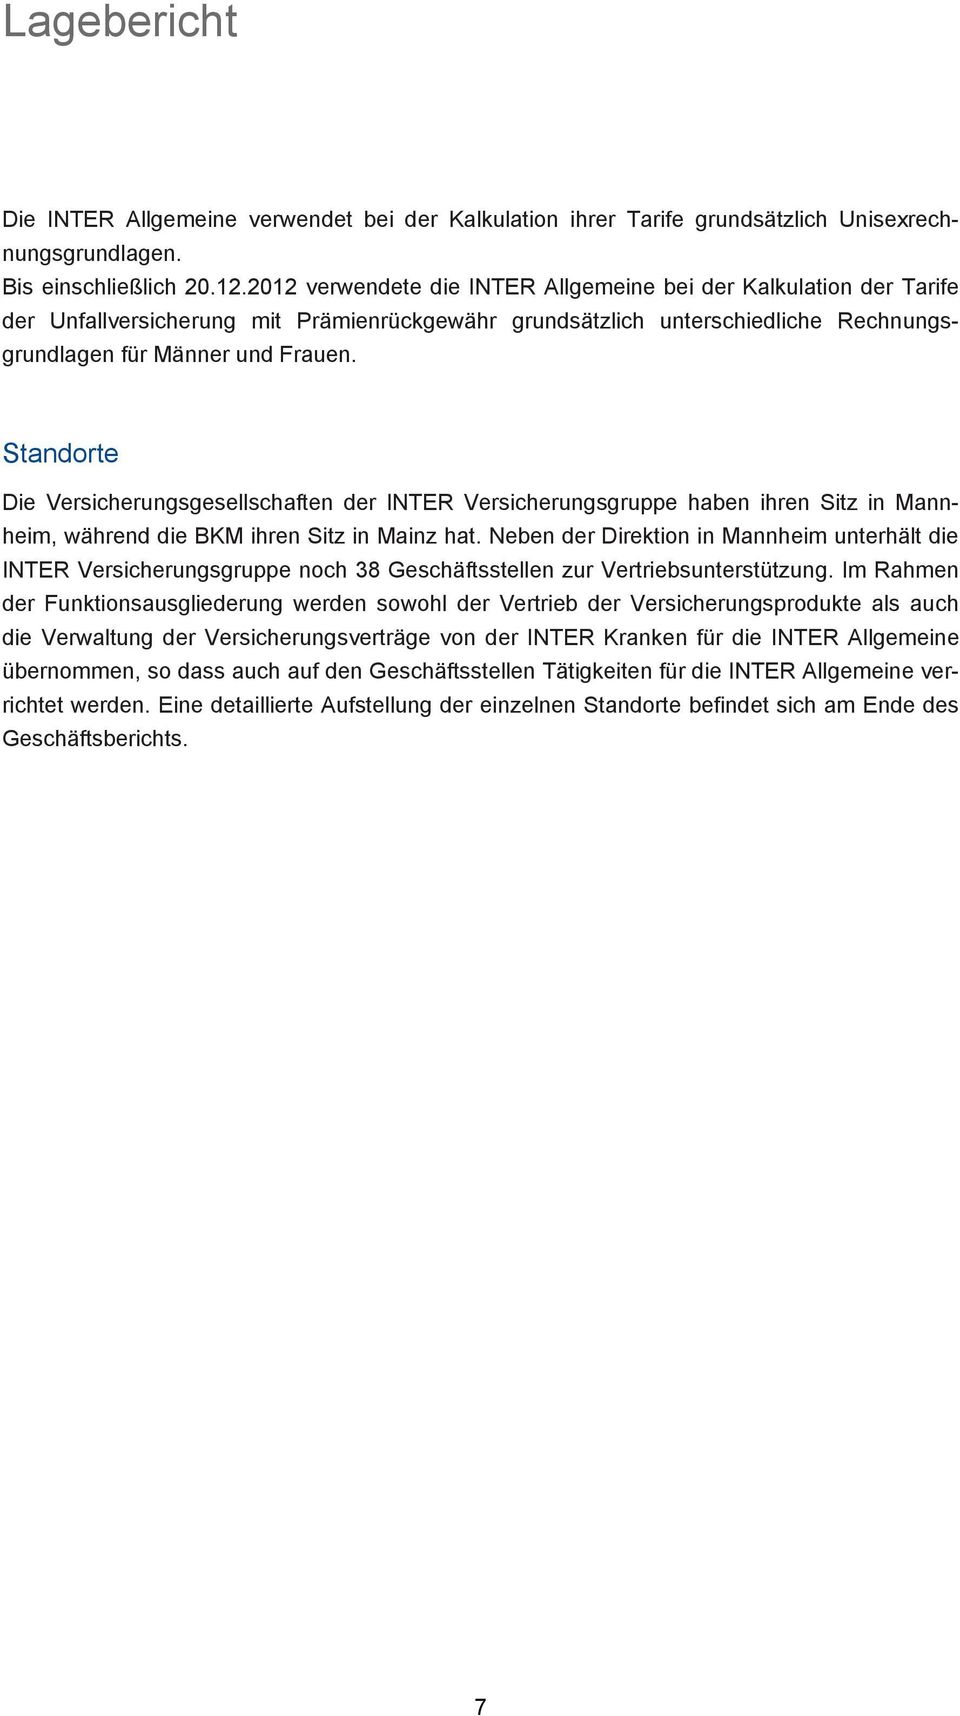 Standorte Die Versicherungsgesellschaften der INTER Versicherungsgruppe haben ihren Sitz in Mannheim, während die BKM ihren Sitz in Mainz hat.